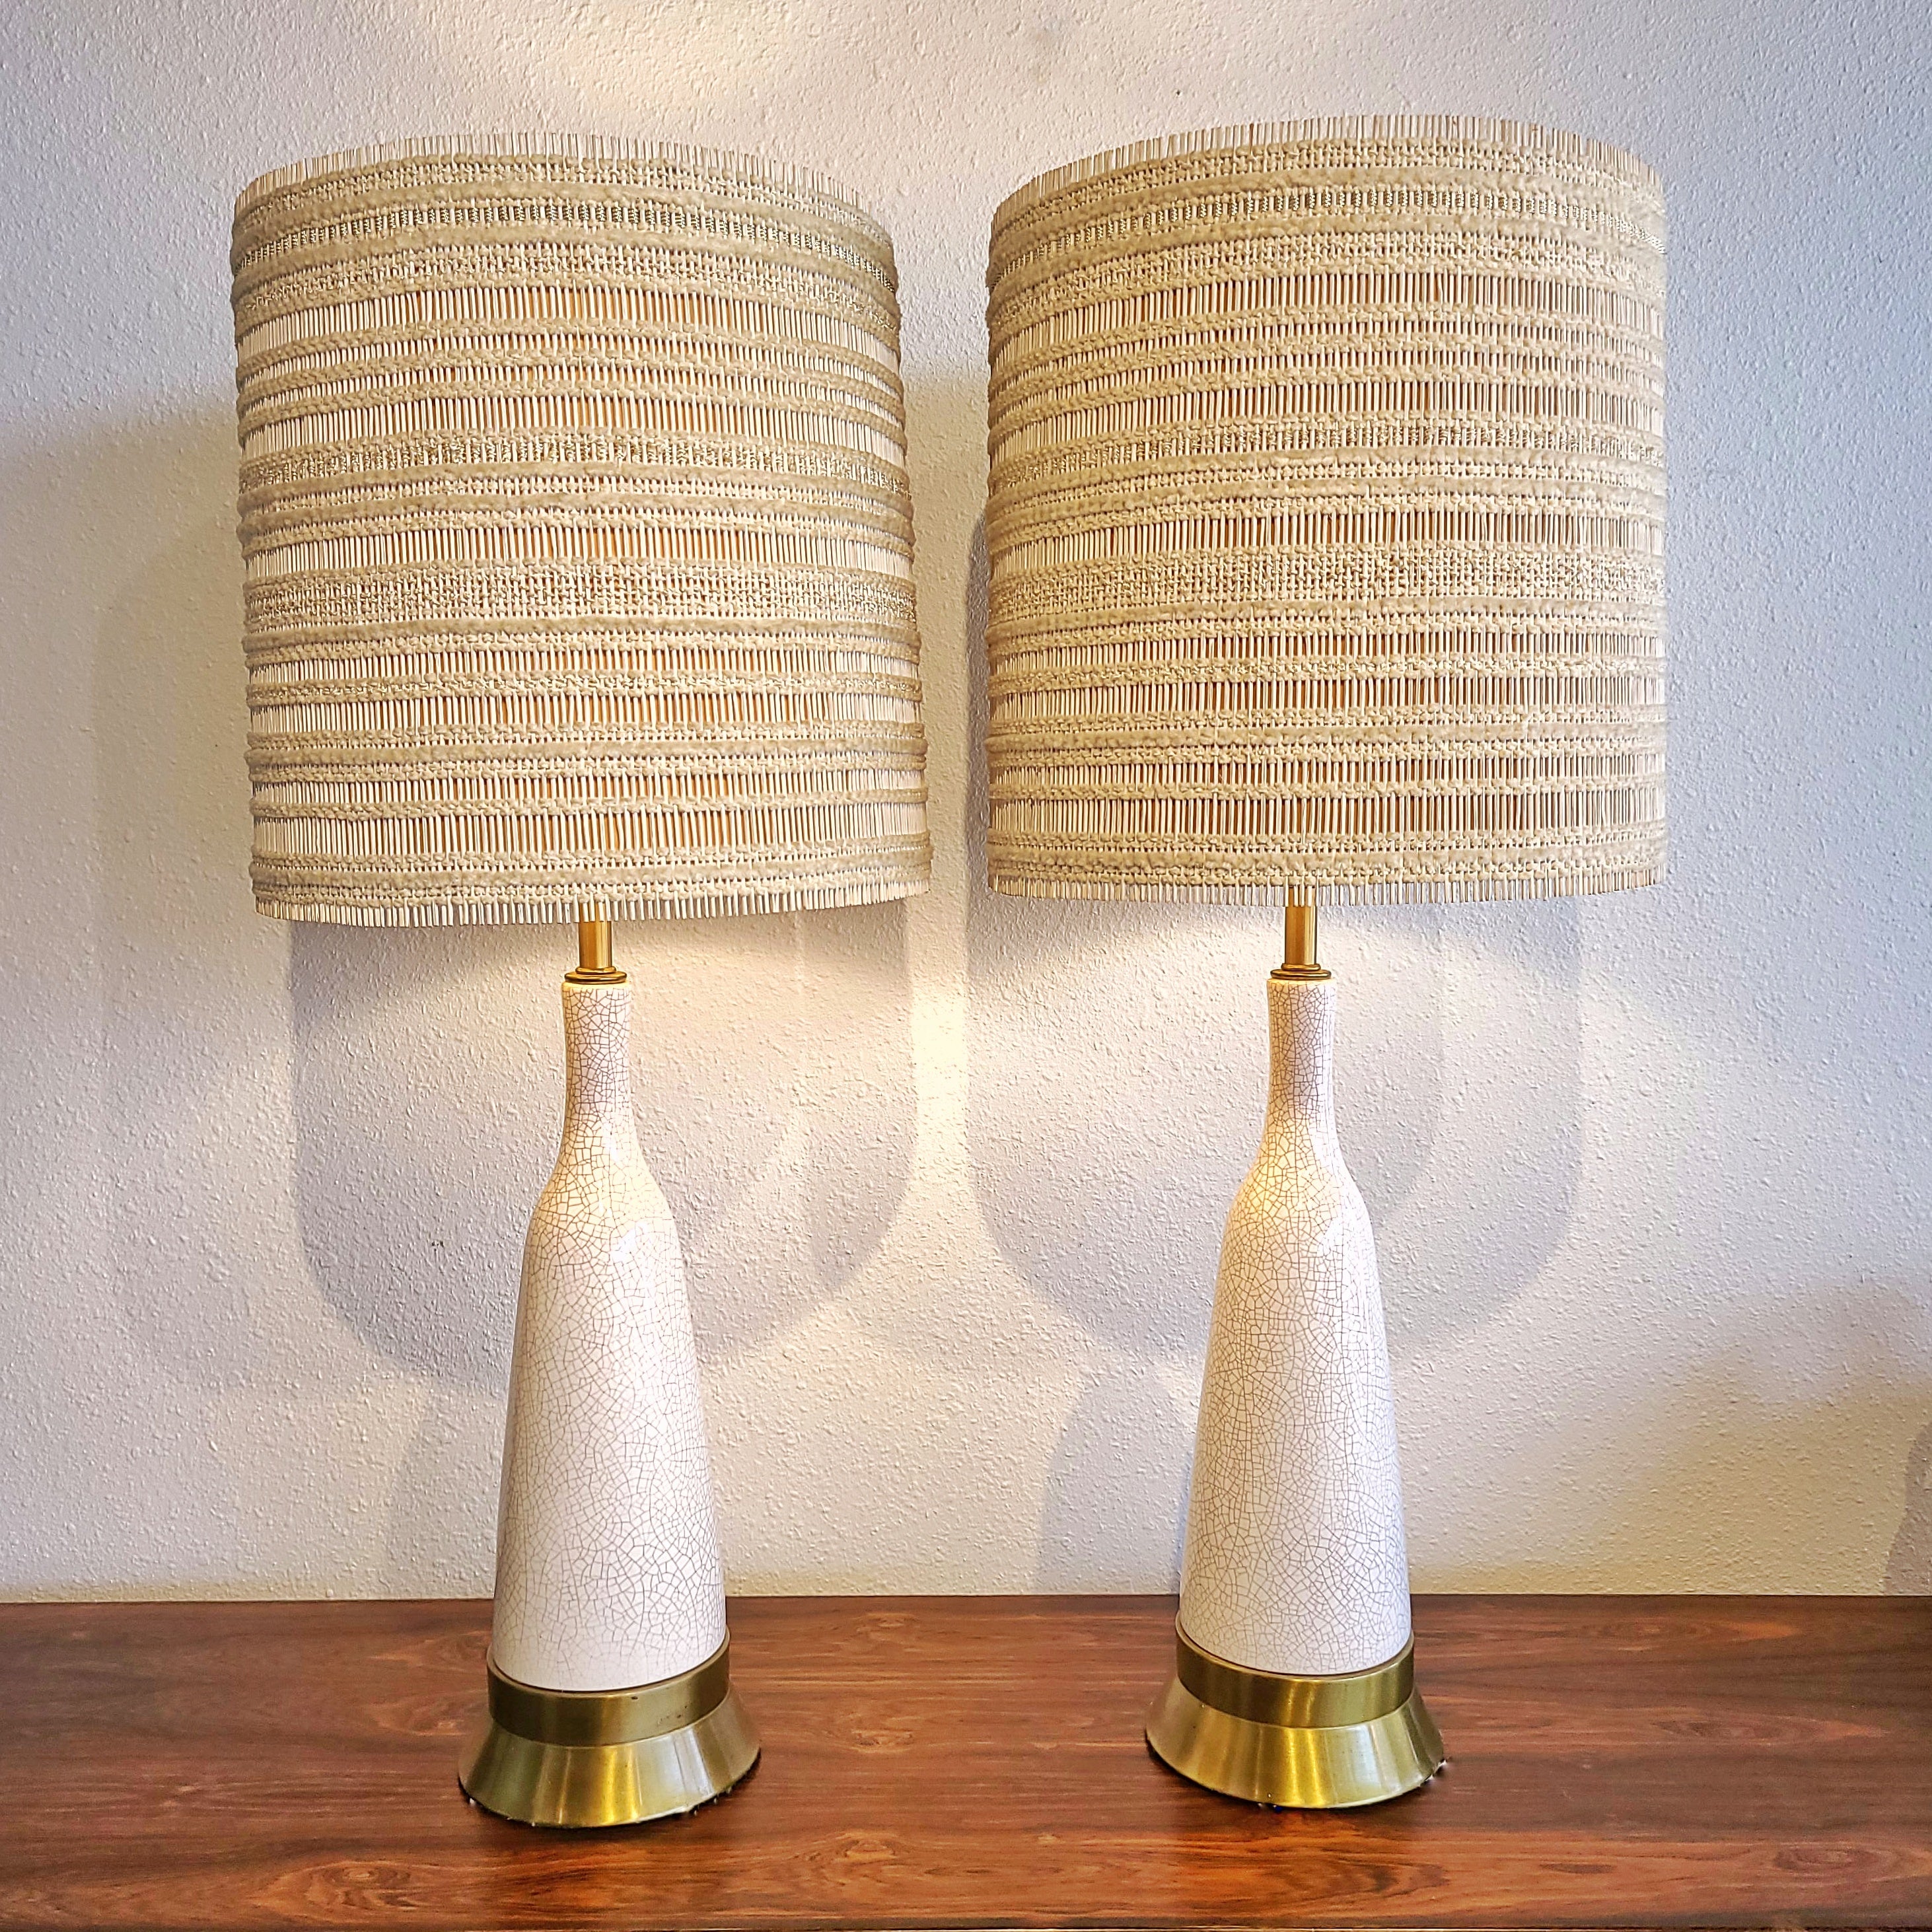 PAUL LÁSZLÓ & MARIA KIPP FOR WILSHIRE HOUSE CRACKLE GLAZE LAMPS